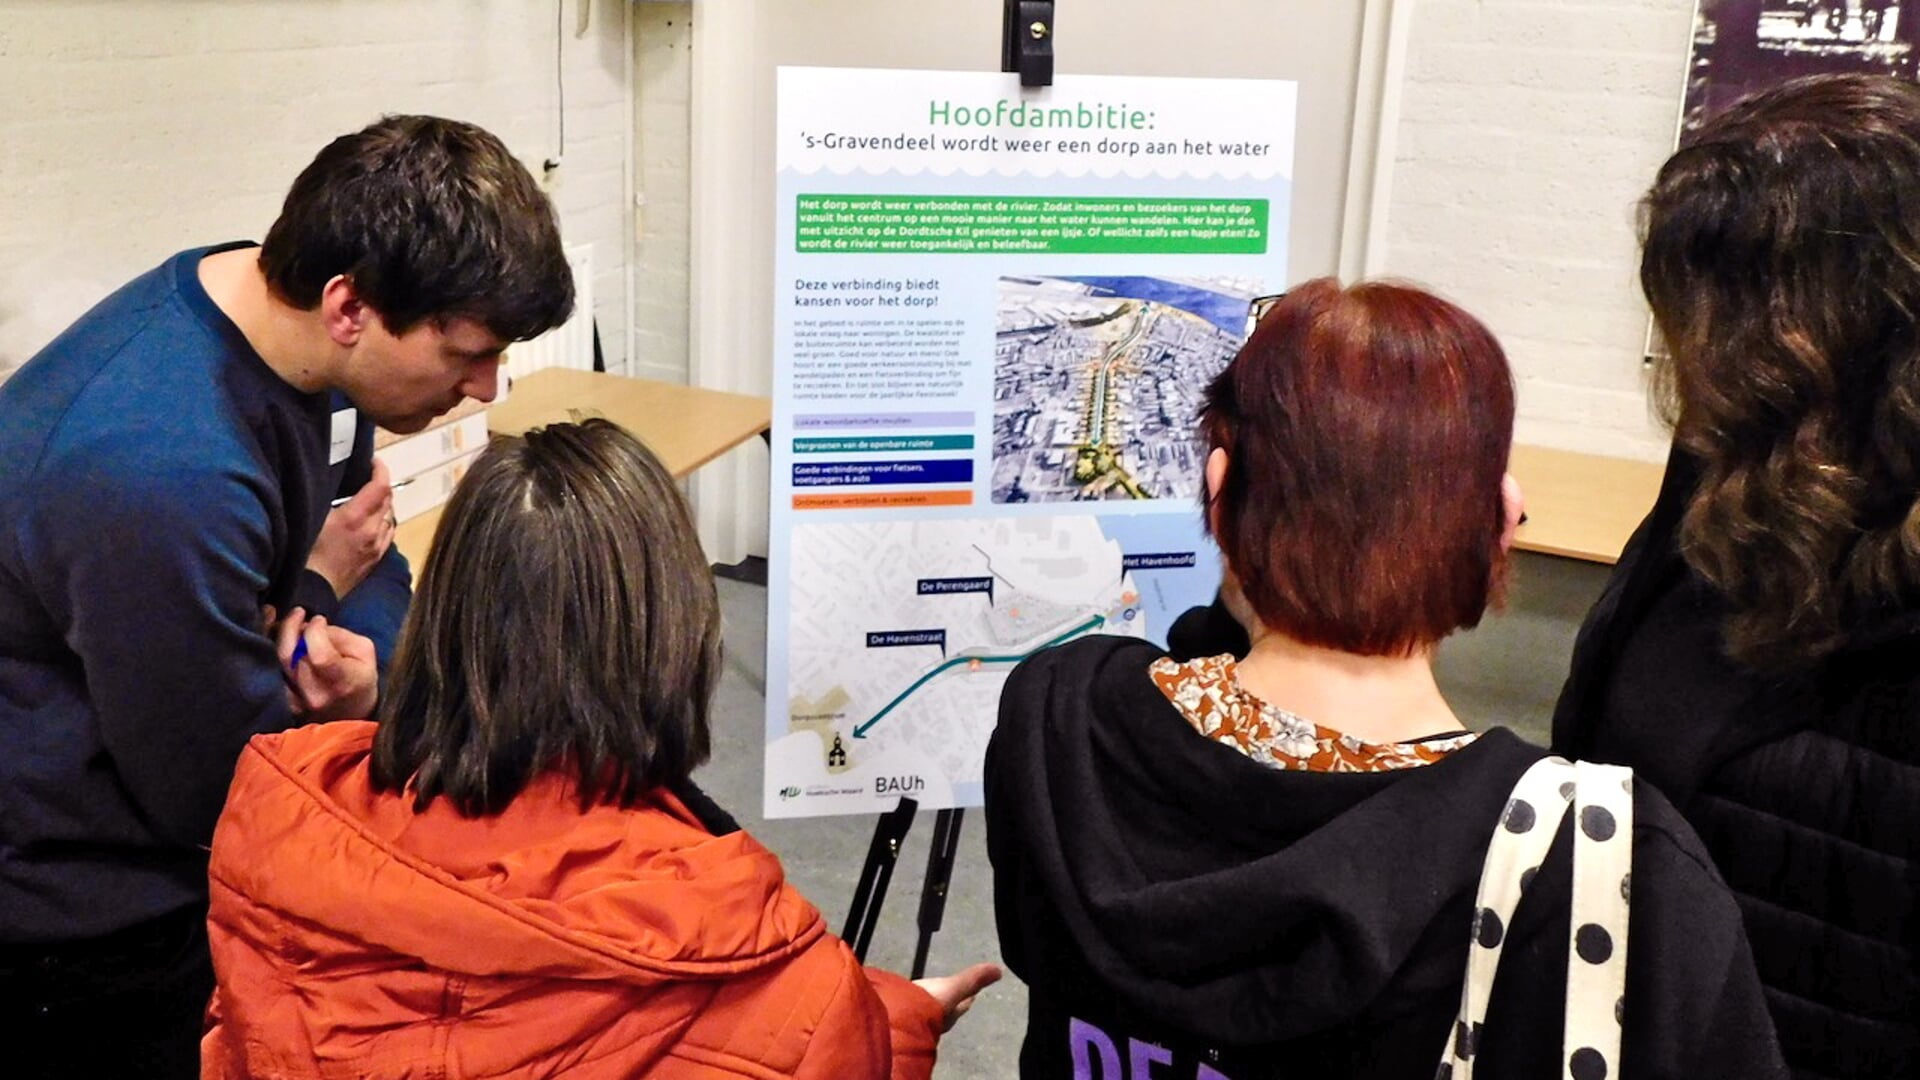 Uitleg over het nieuwe plan voor ontwikkeling van het oude havengebied. (foto's: Arie Pieters)